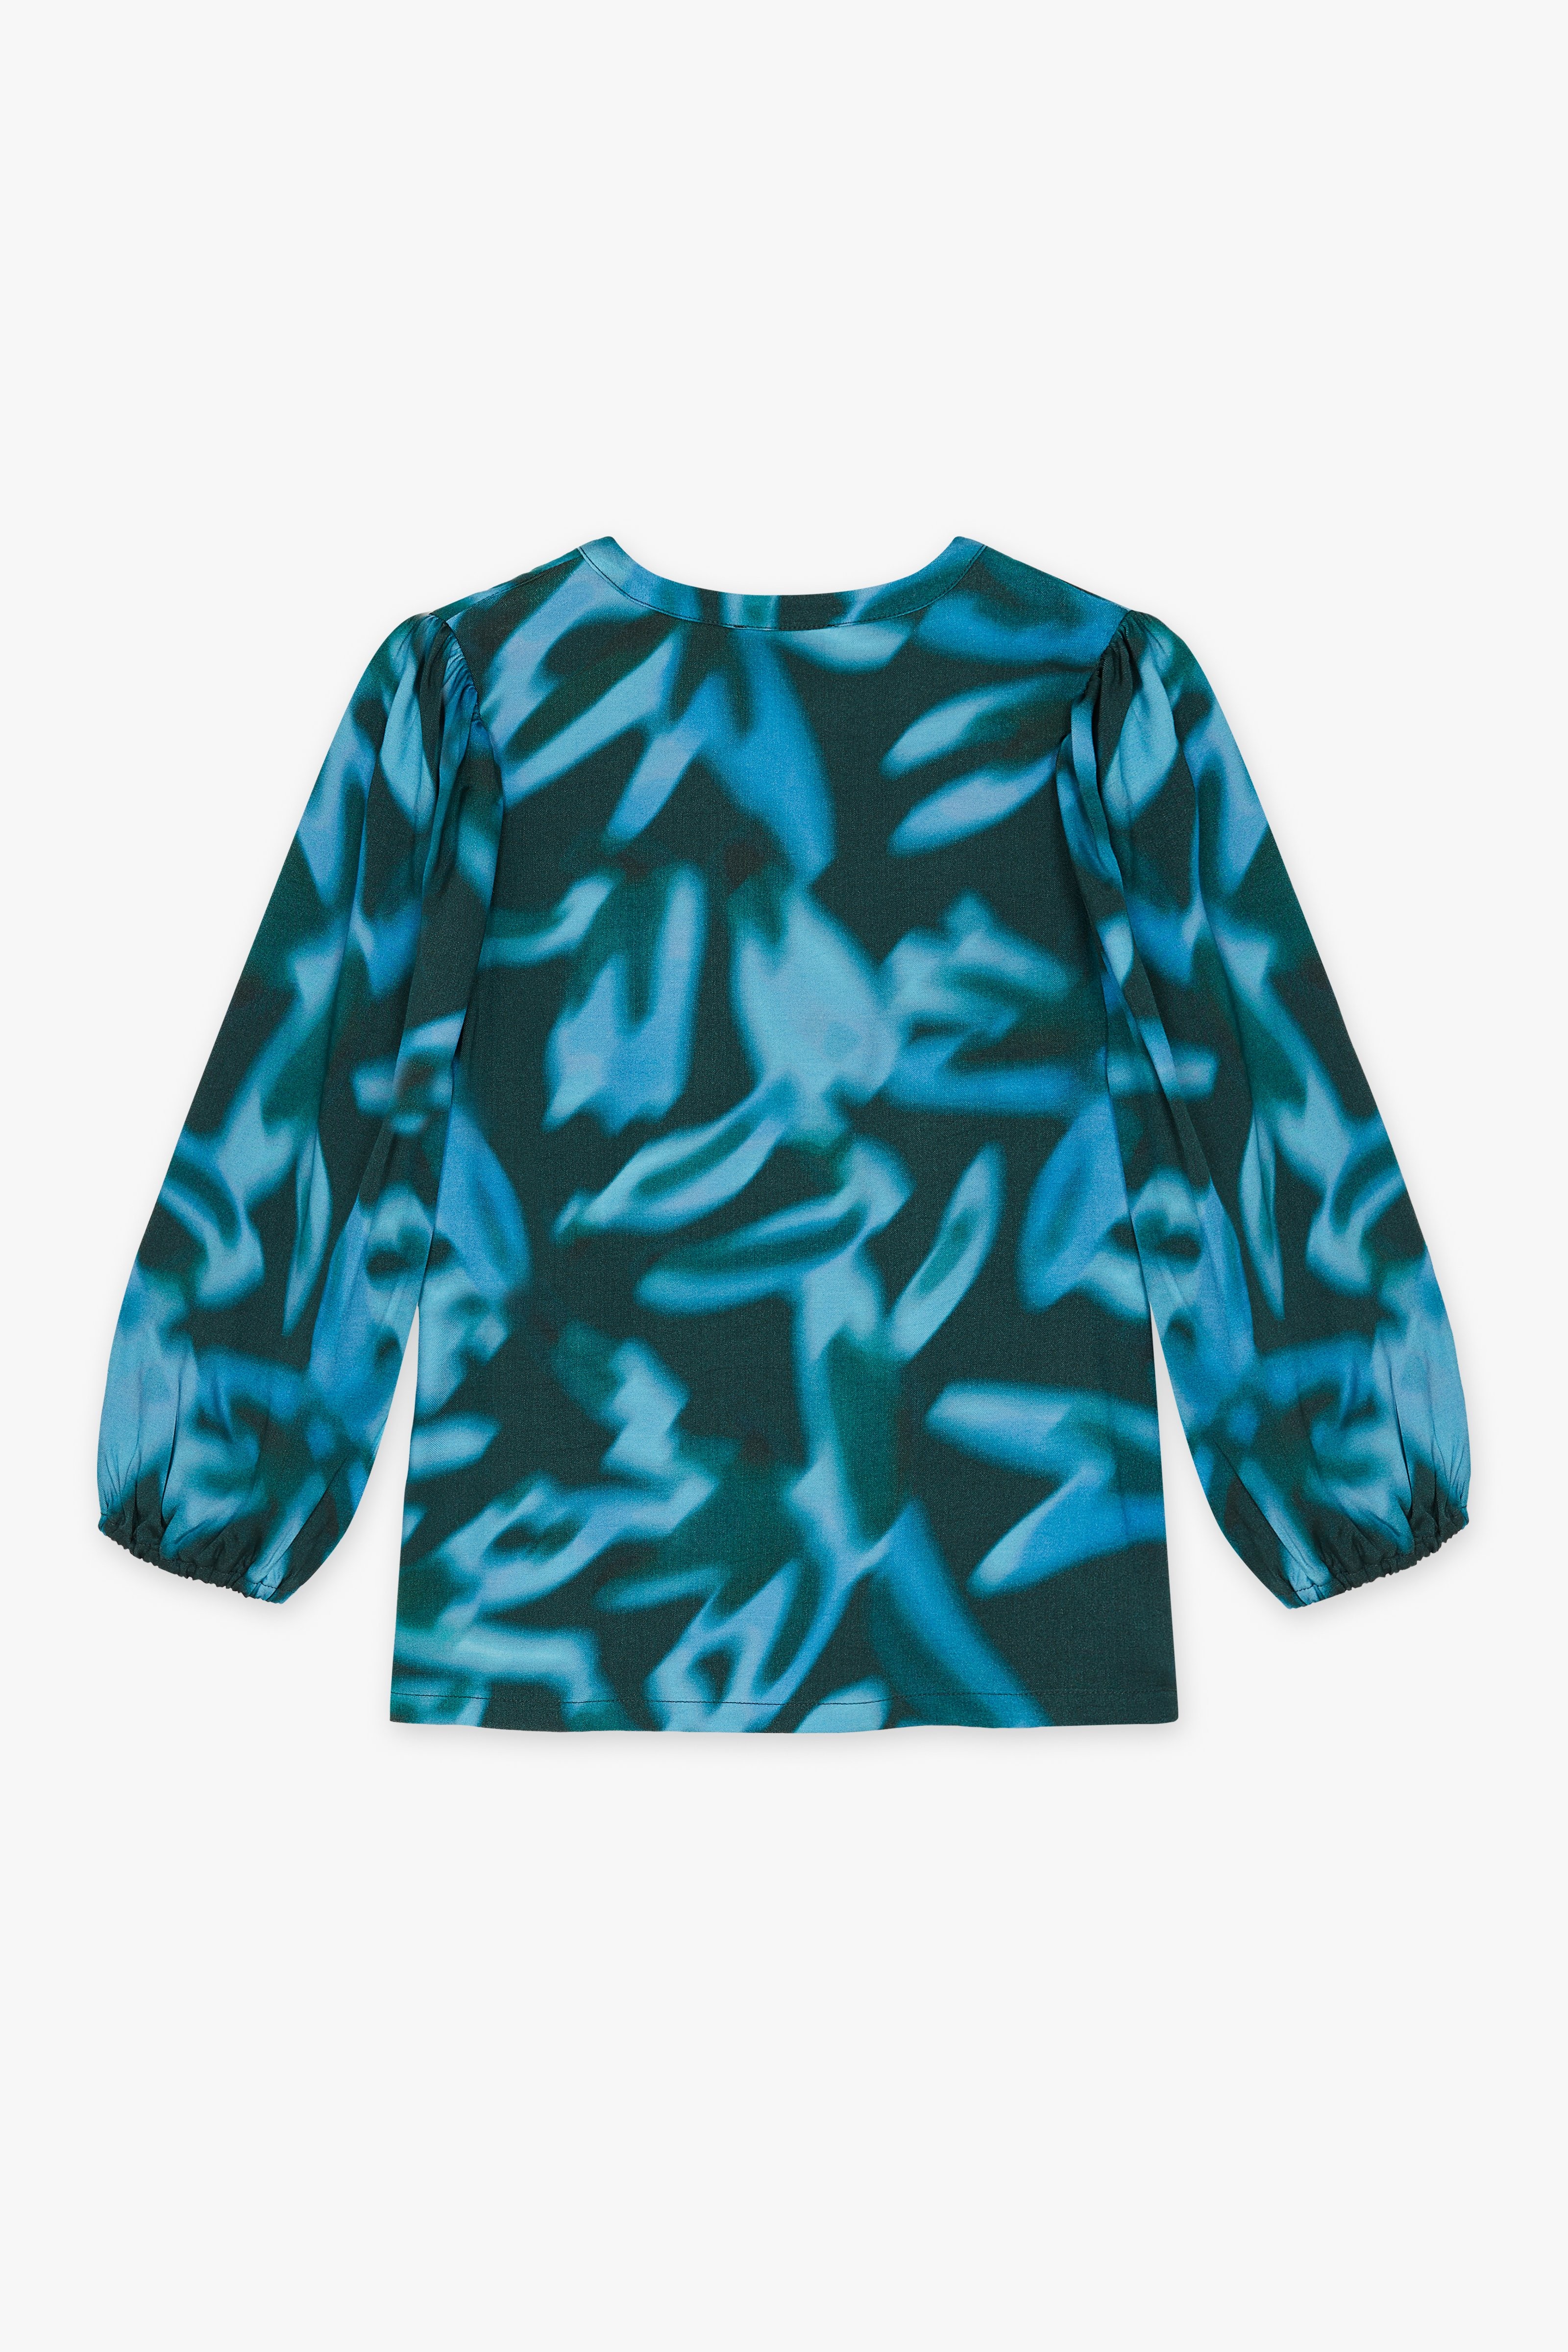 CKS Dames - BULANI - blouse short sleeves - dark blue